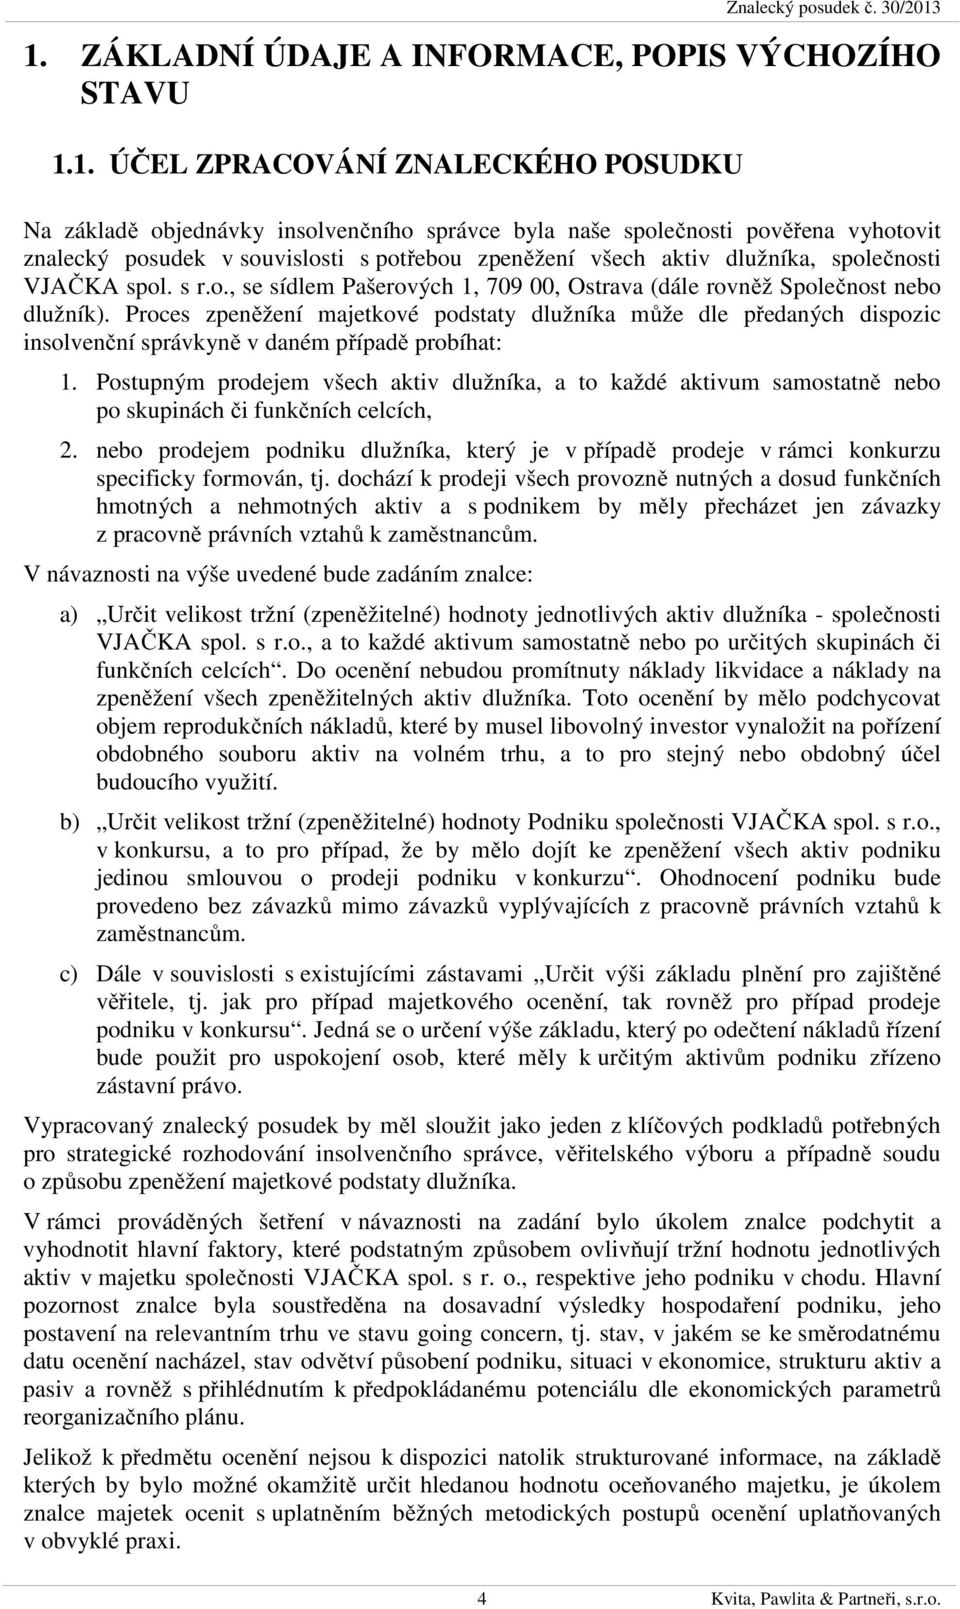 souvislosti s potřebou zpeněžení všech aktiv dlužníka, společnosti VJAČKA spol. s r.o., se sídlem Pašerových 1, 709 00, Ostrava (dále rovněž Společnost nebo dlužník).